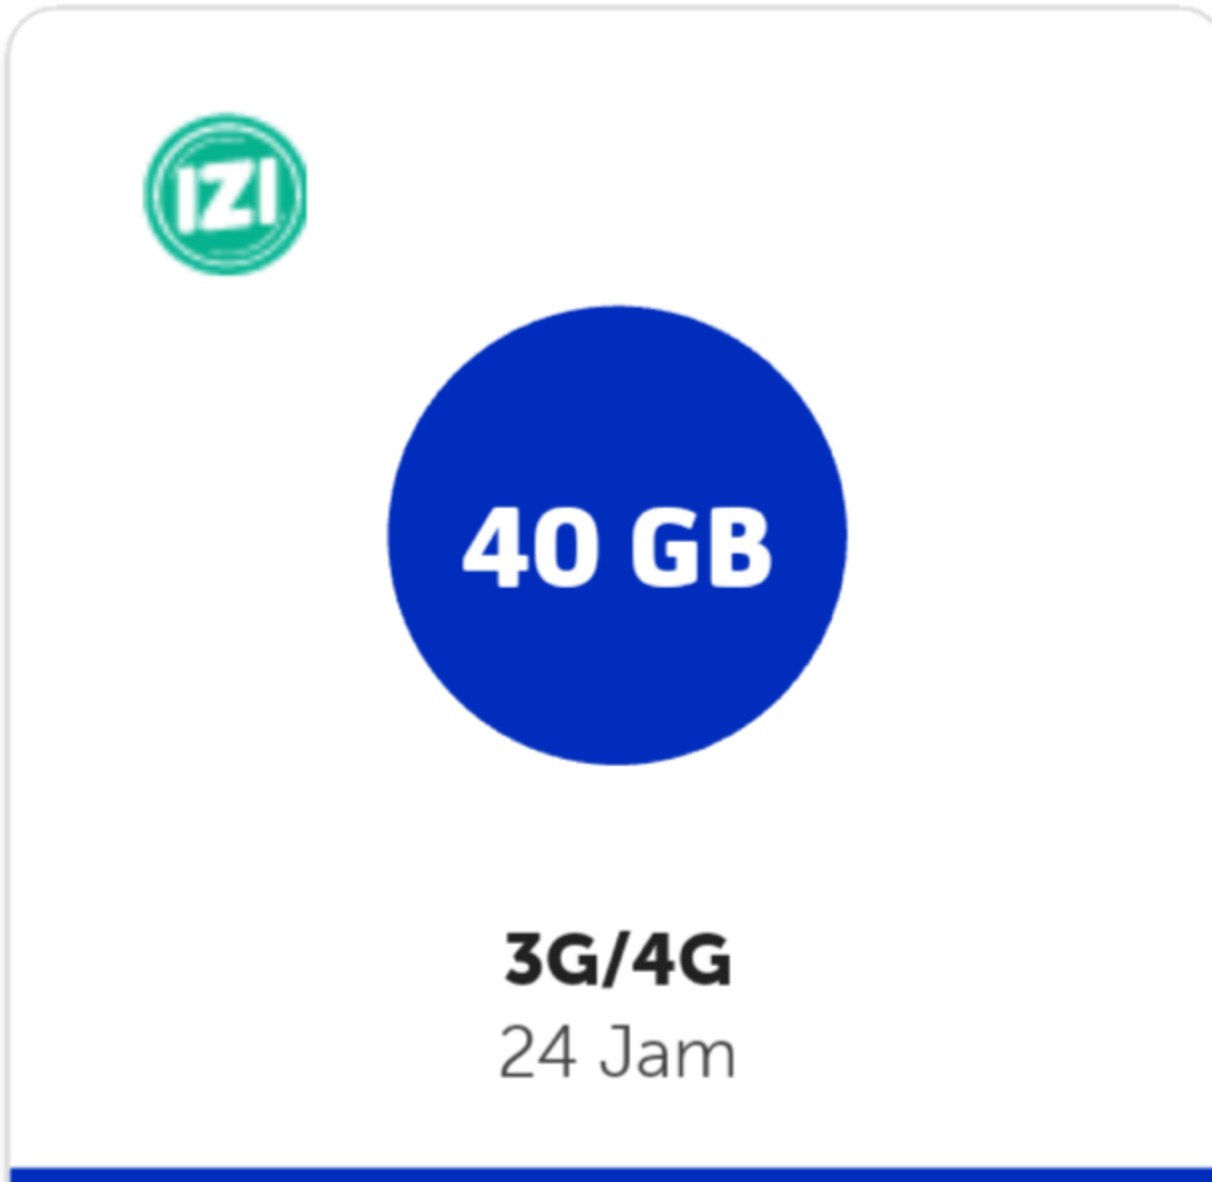 Kuota XL XL GO IZI Mifi Modem - XL GO IZI 40 GB